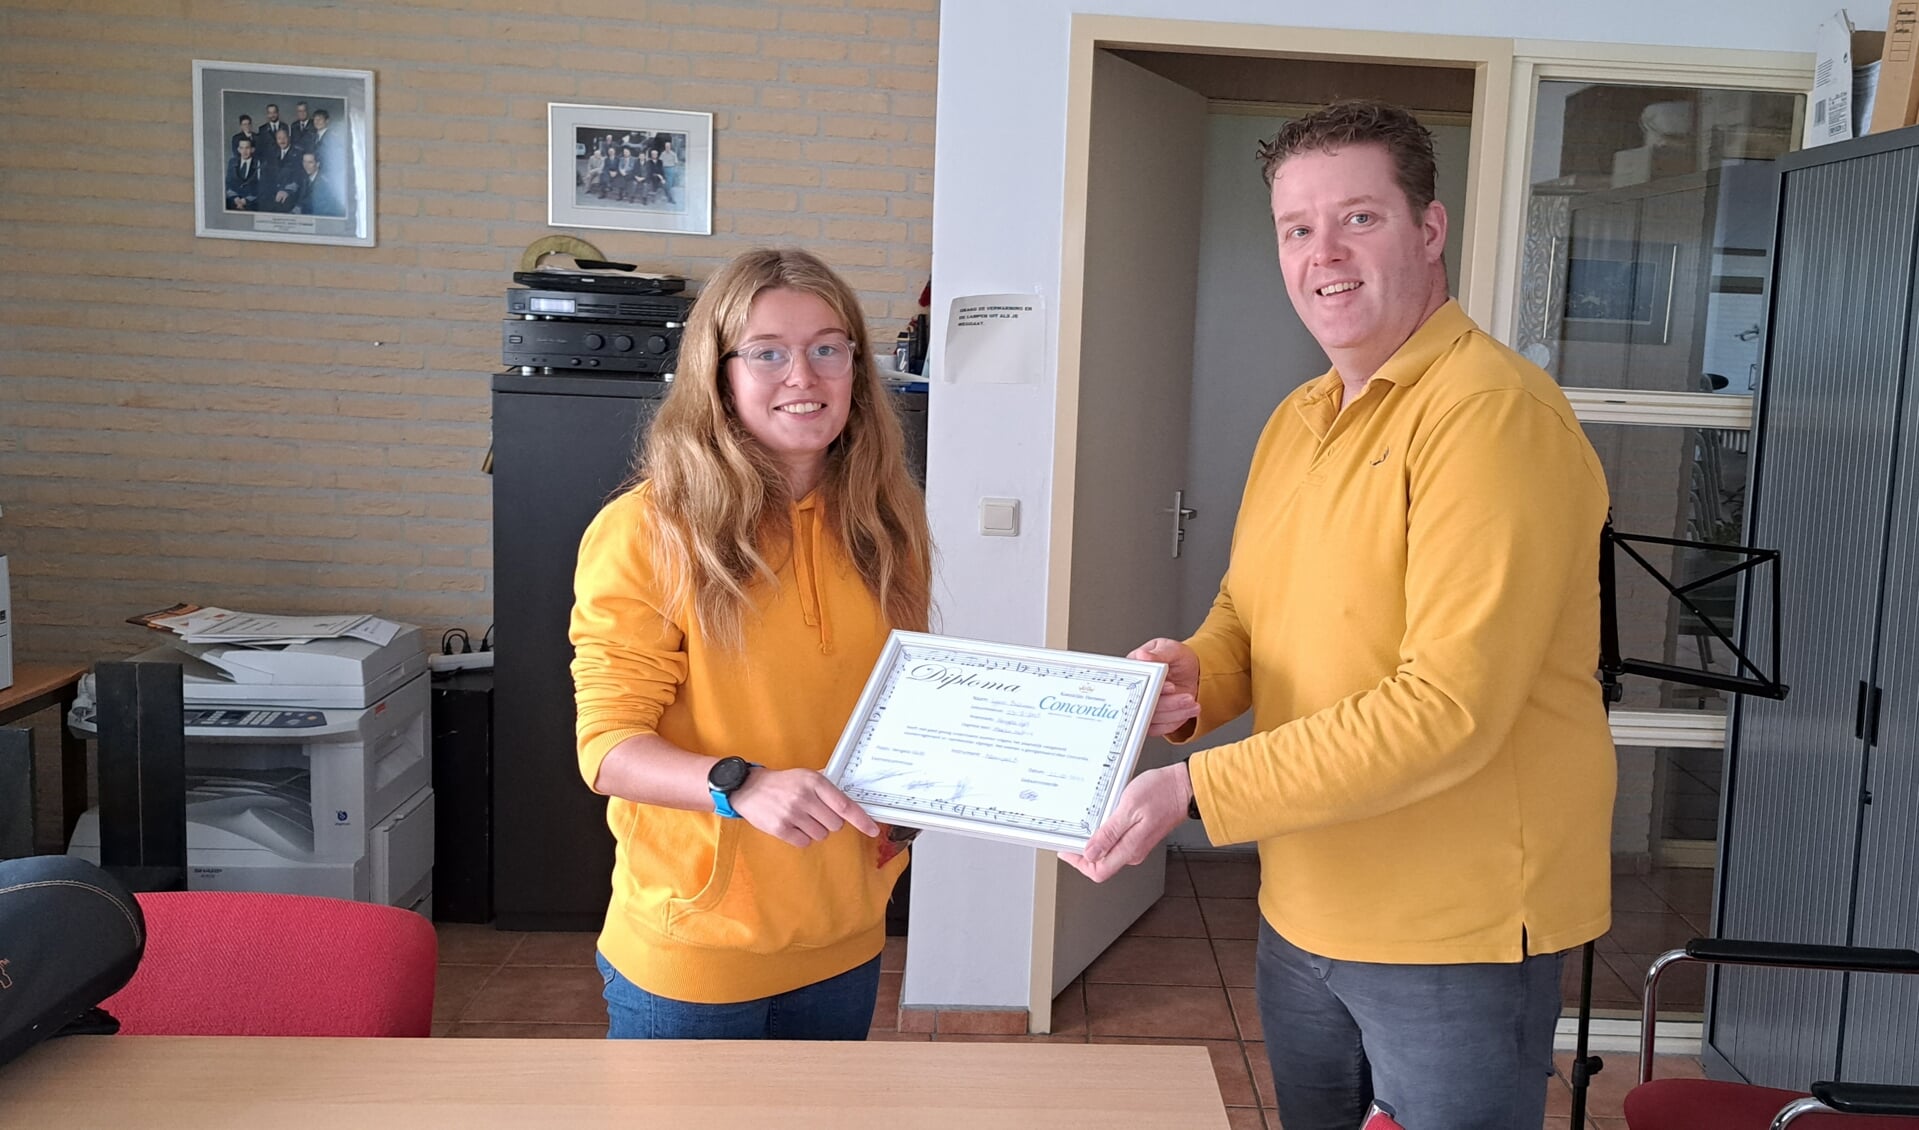 De net geslaagde Lynn Bultman ontvangt haar diploma van voorzitter Harmen Kraassenberg. Foto: Marieke Kraassenberg